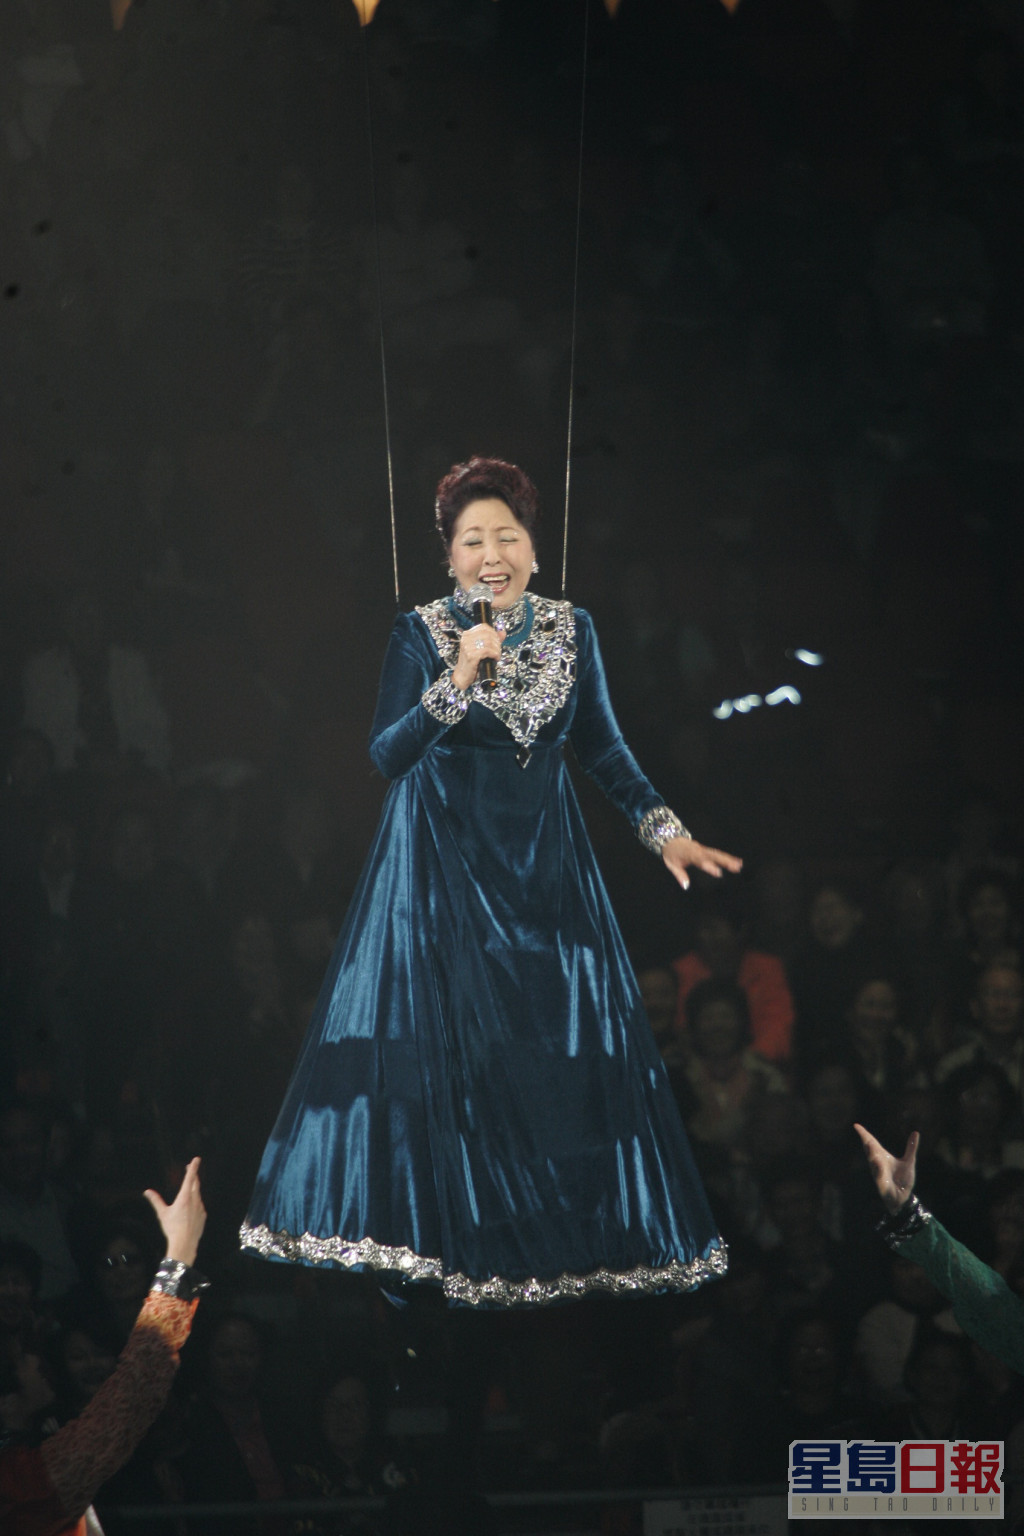 静婷于红磡体育馆举行《静婷最激50年演唱会》，并吊威吔至6尺高。